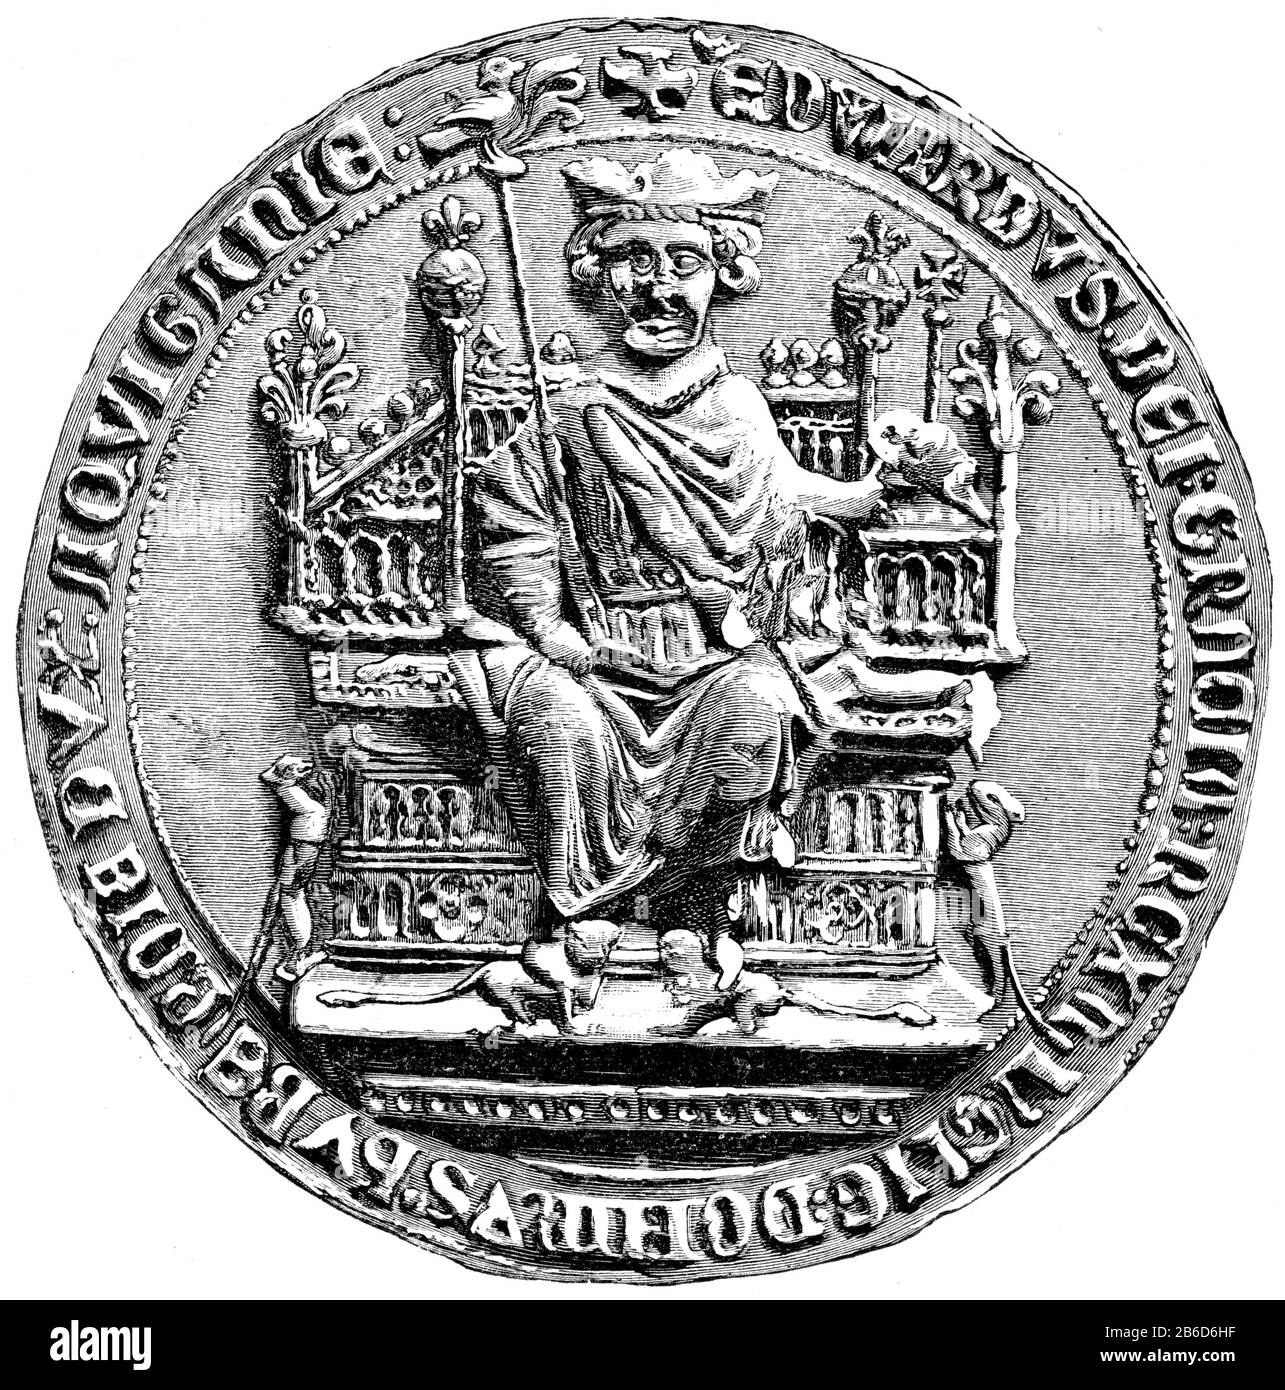 Grand sceau d'Edward I, XIe siècle. Un peu avant l'année 1066 Edward le Confesseur (c1003-1066) a commencé à utiliser un "grand Sceau" pour signifier qu'un document portait la force de sa volonté. À quelques exceptions près, chaque monarque subséquent jusqu'en 1603, lorsque l'Union des couronnes a uni l'Ecosse et l'Angleterre a choisi son propre dessin pour le Grand Sceau. Banque D'Images